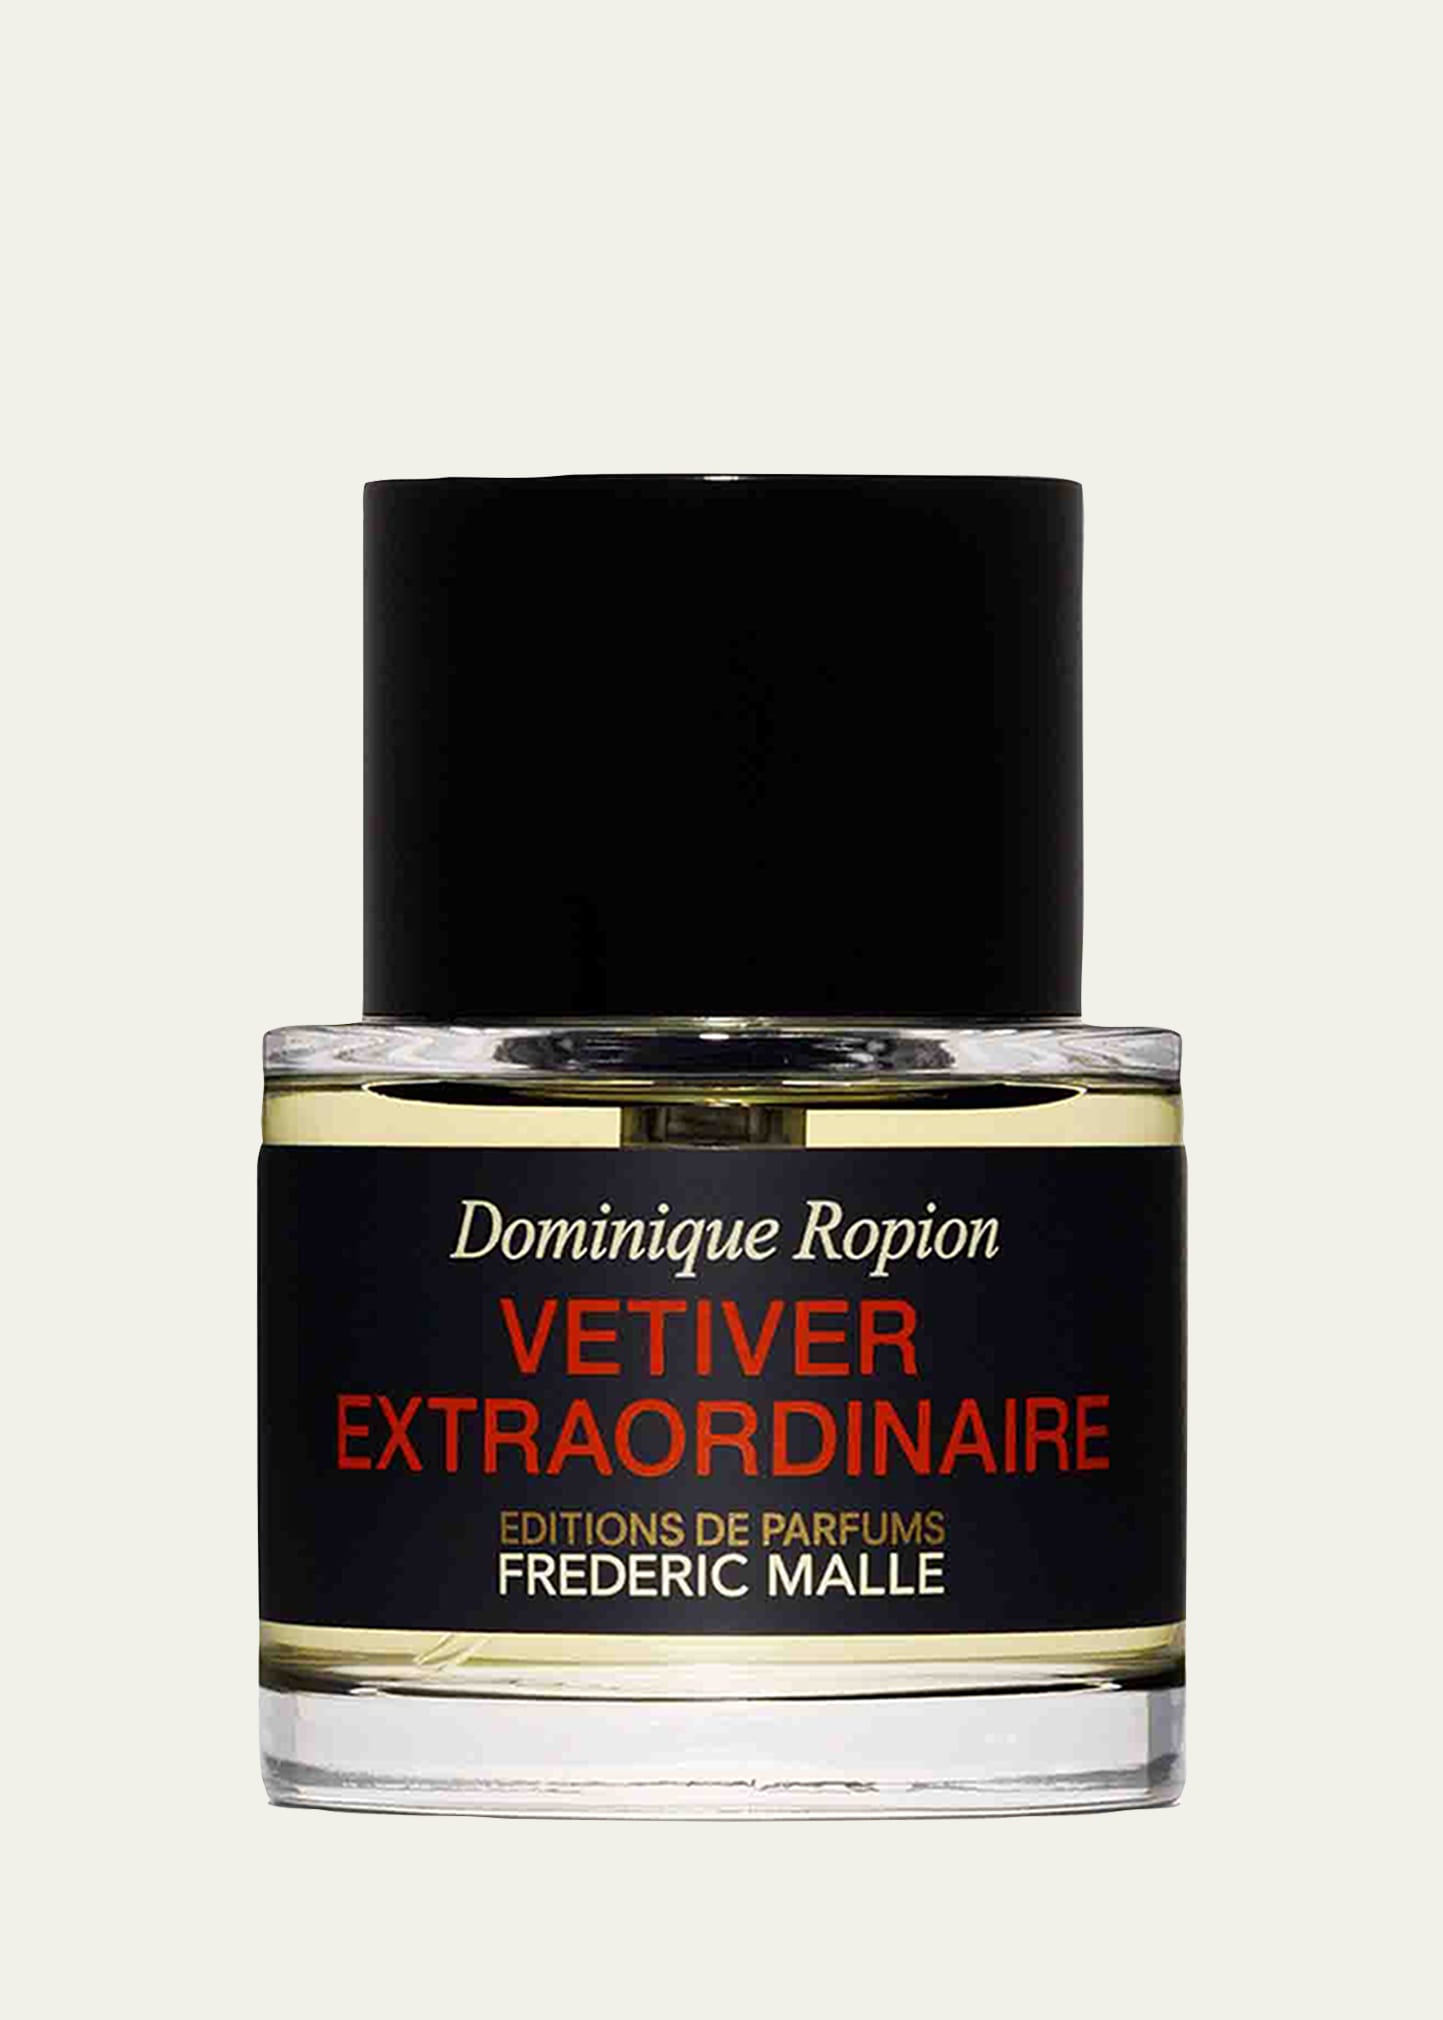 Vetiver Extraordinaire Perfume, 1.7 oz.